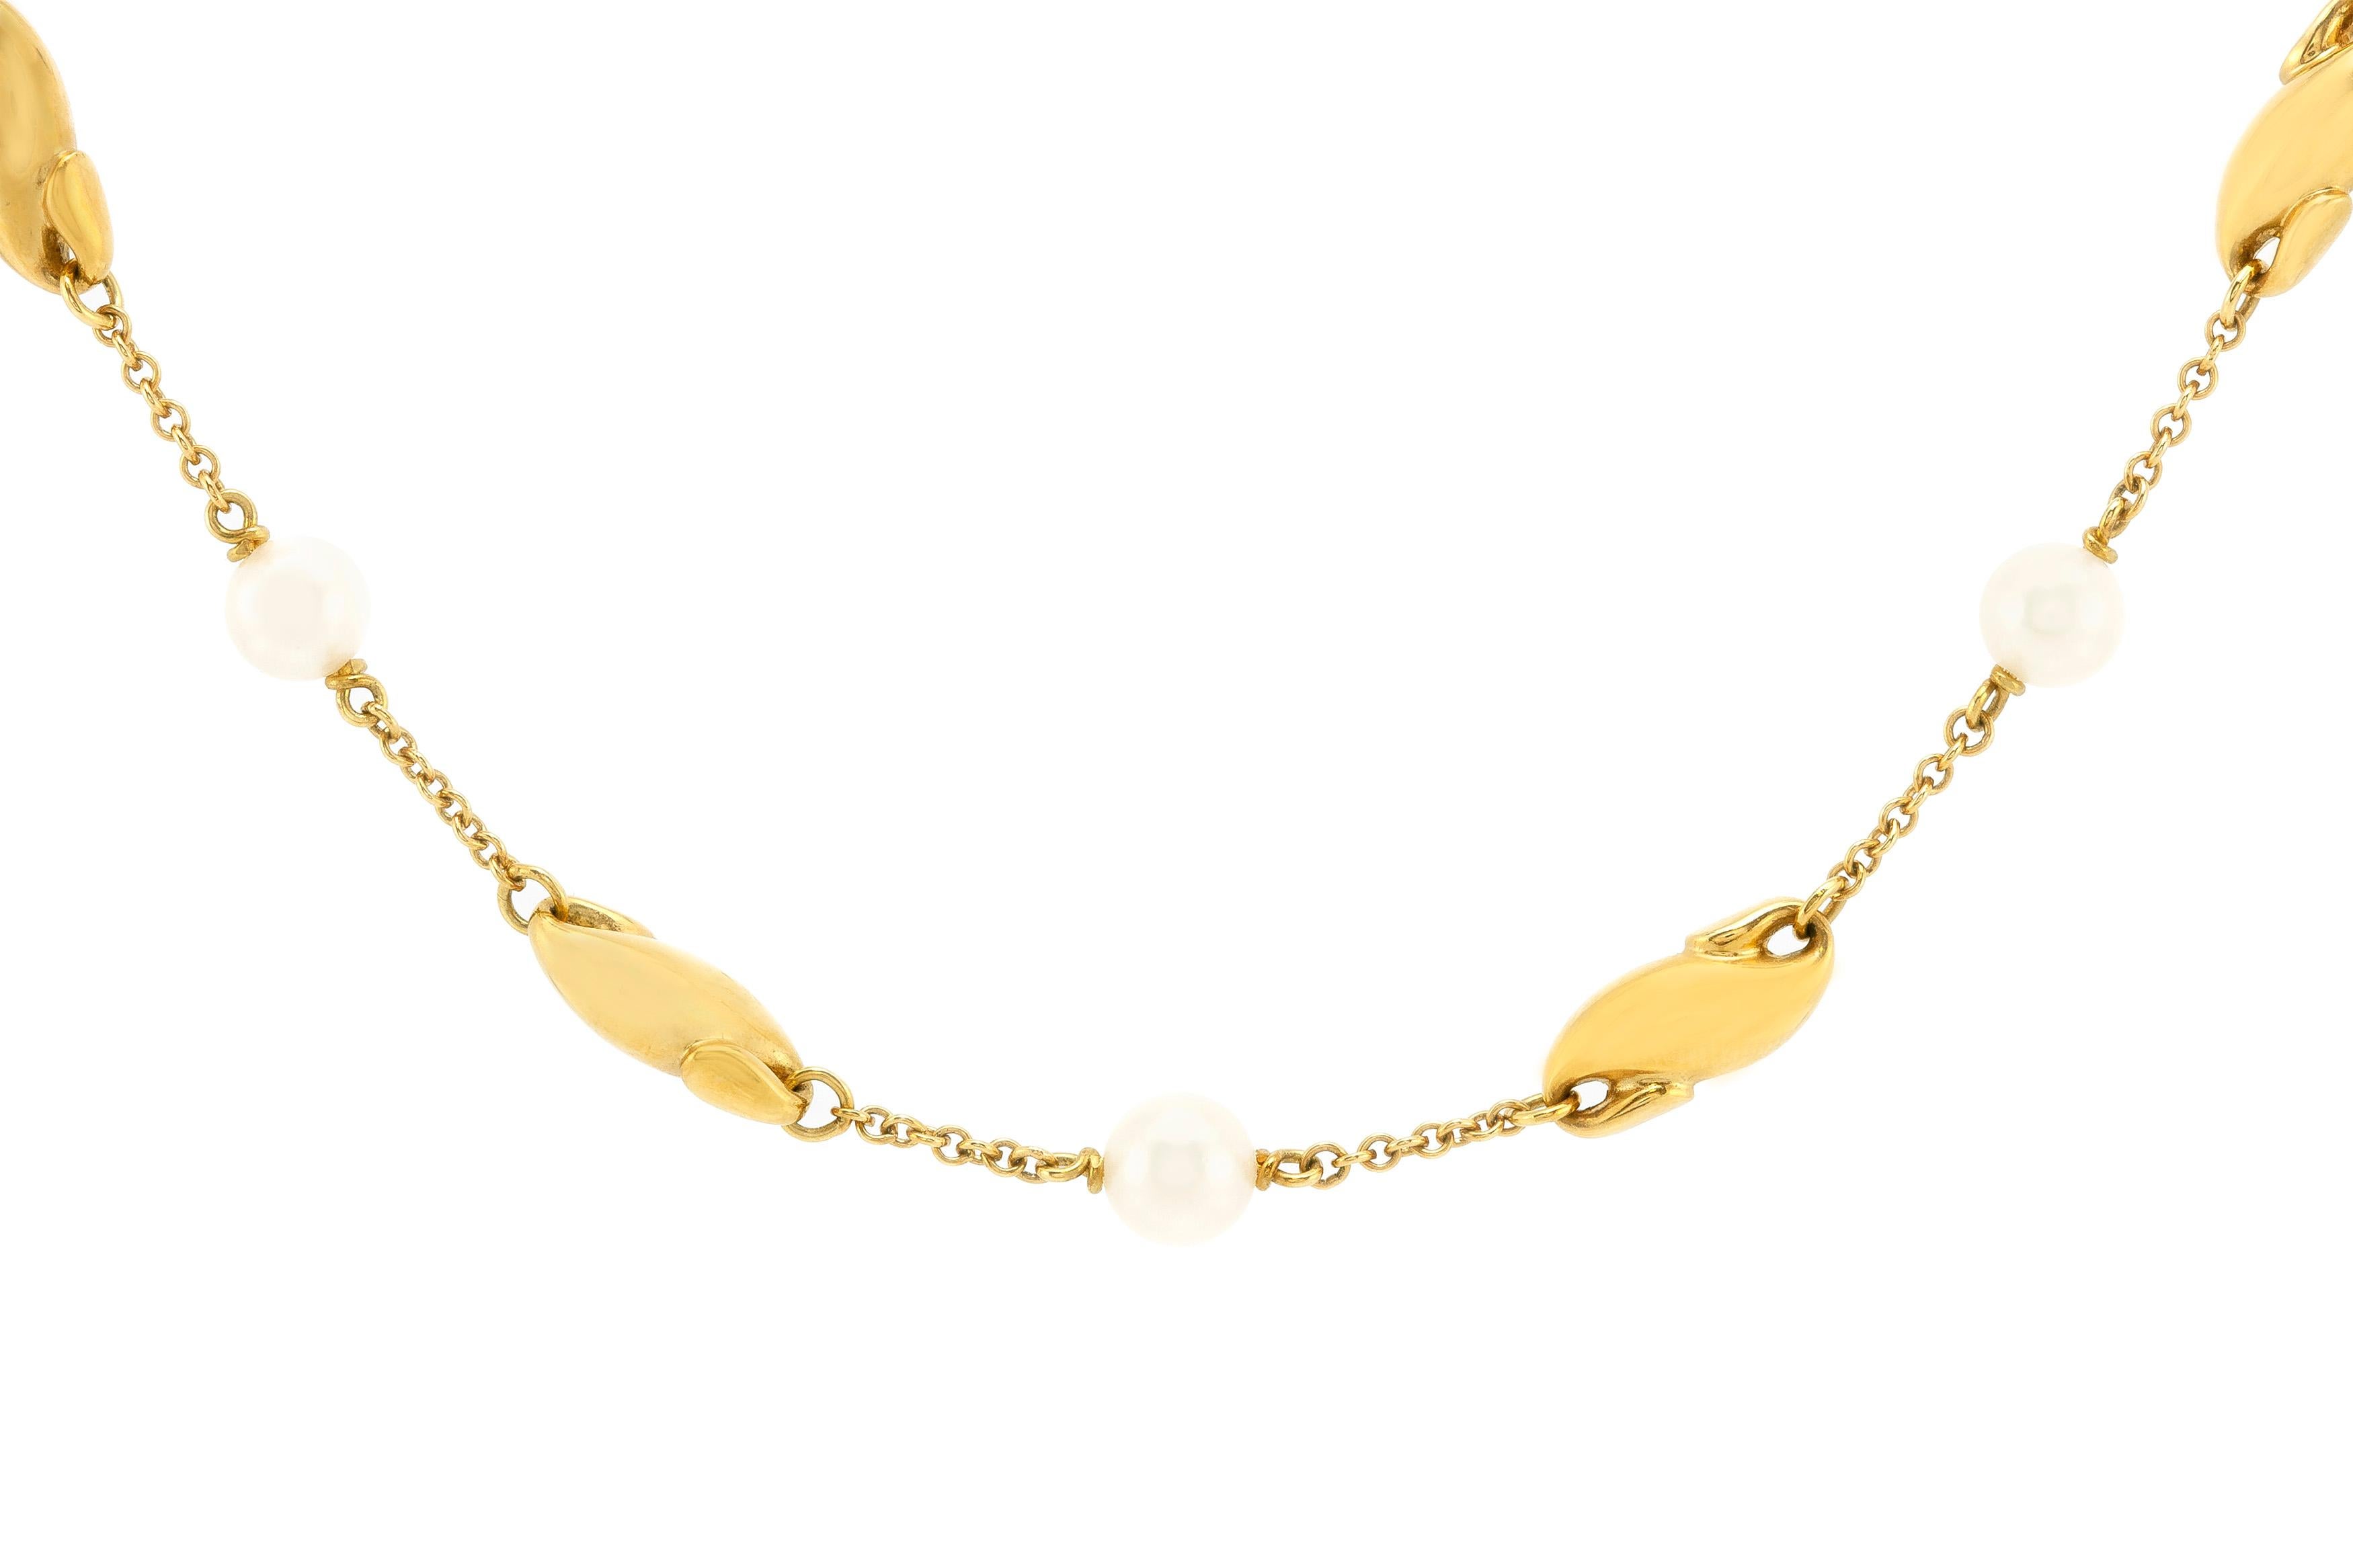 Le collier Tiffany est finement réalisé en or 18K avec des perles